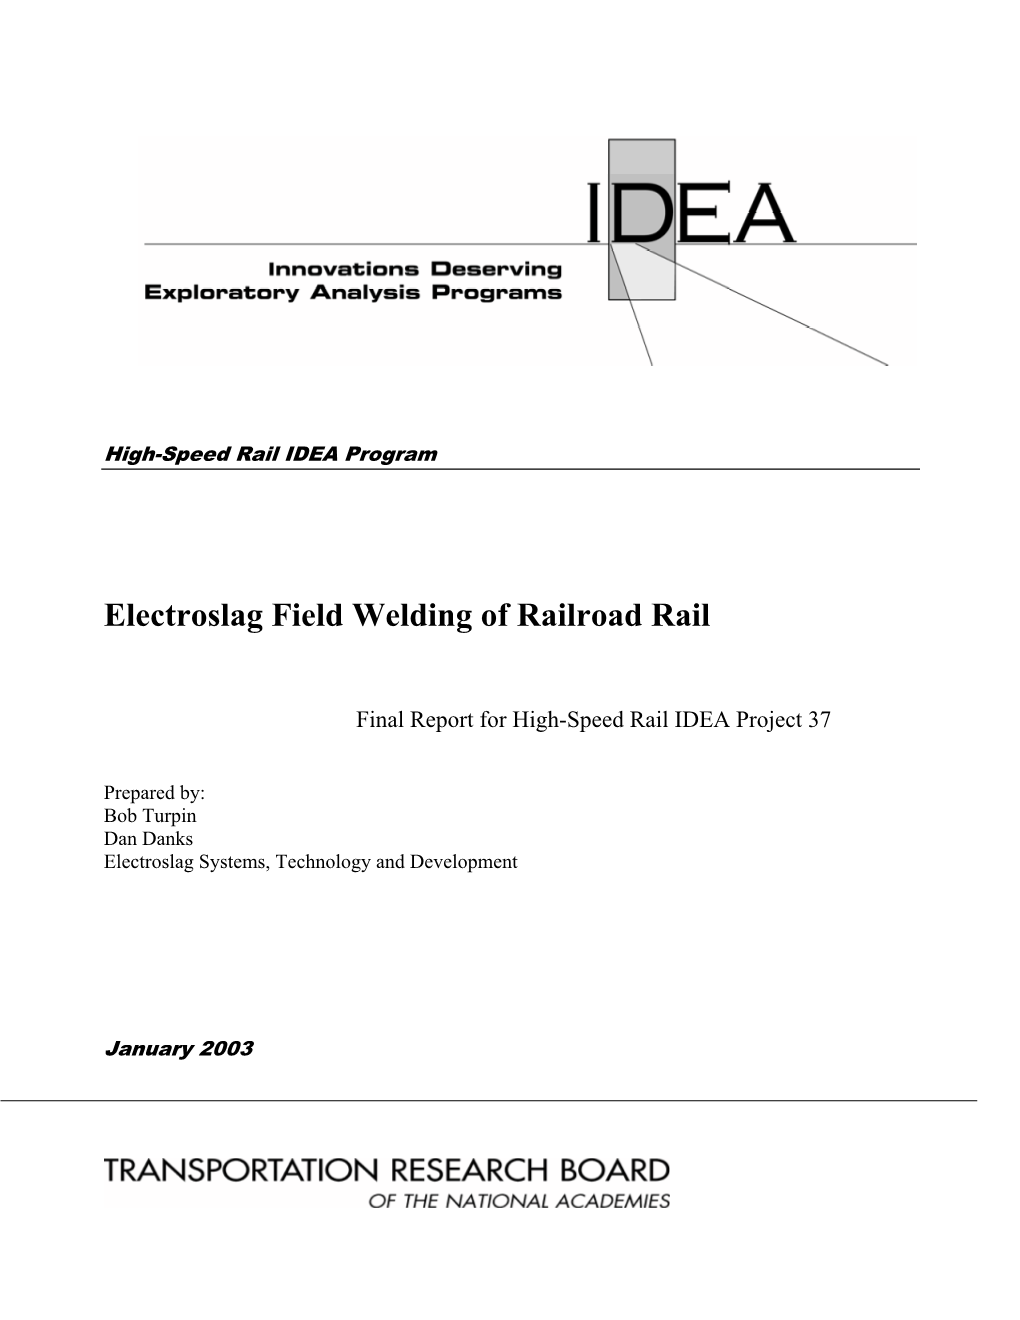 Electroslag Field Welding of Railroad Rail